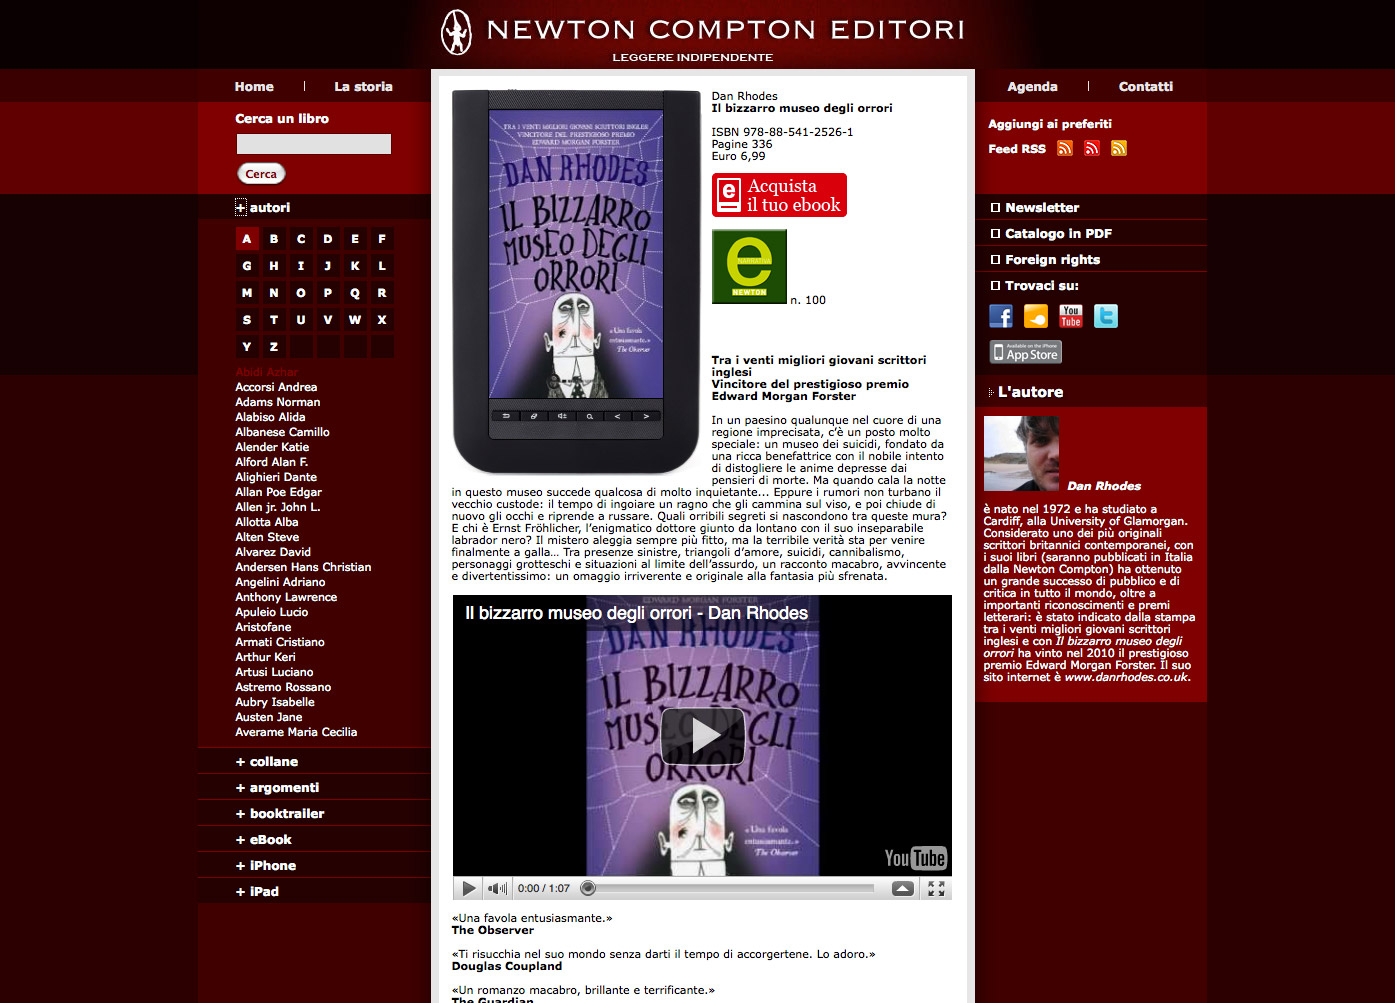 Autori del nuovo sito Newton Compton